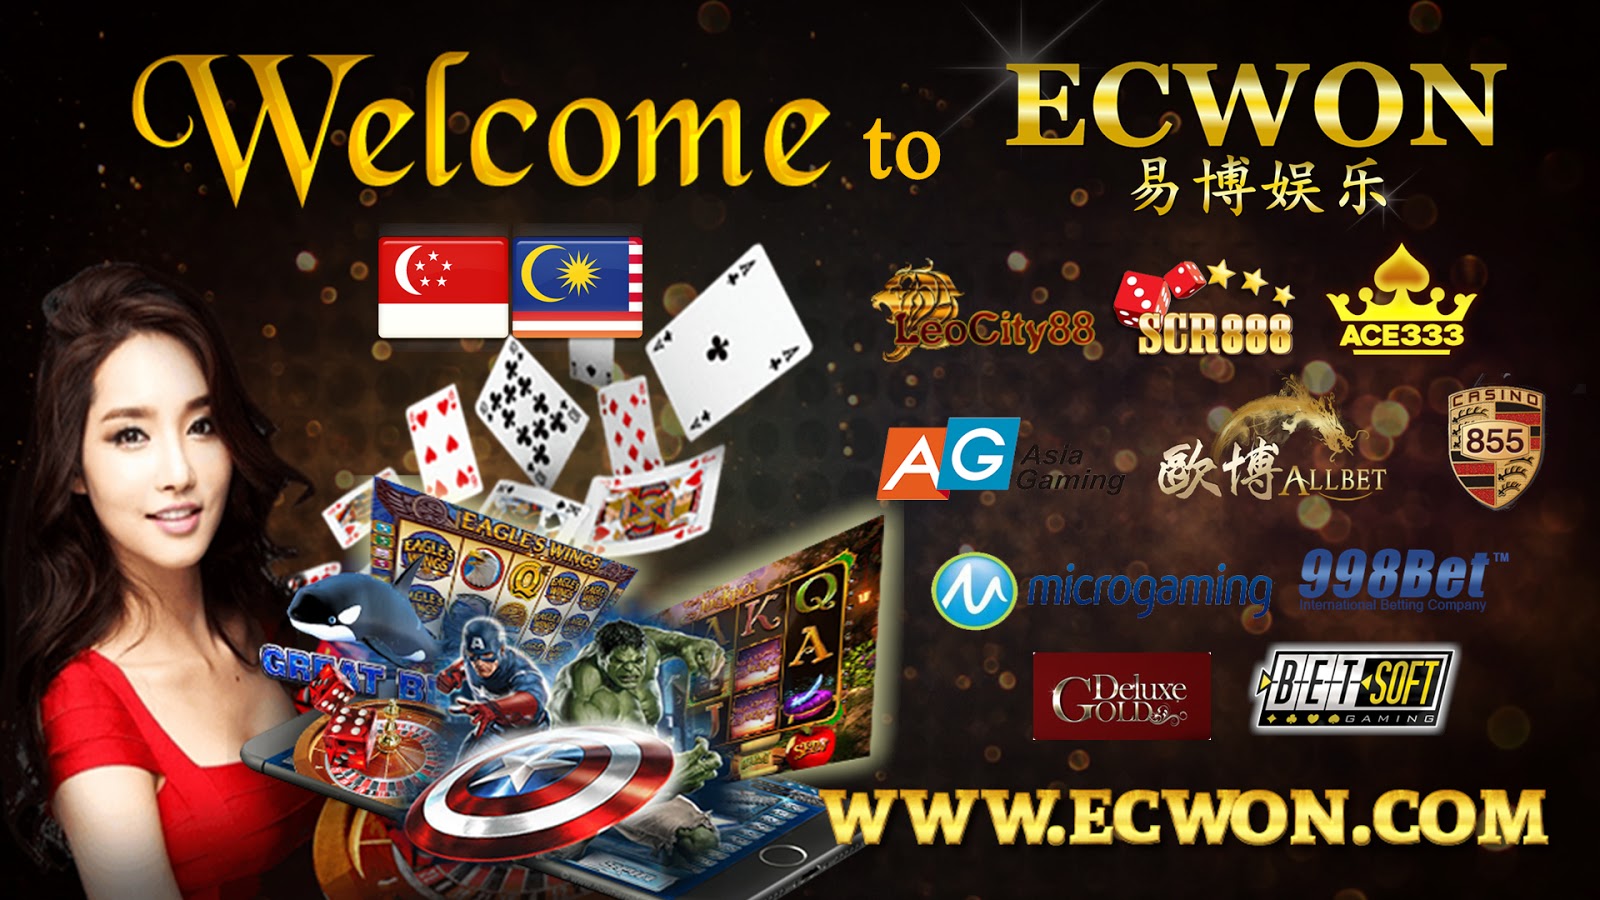 Online casino malaysia welcome bonus vbulletin azino777 отзывы 2020 играть и выигрывать рф